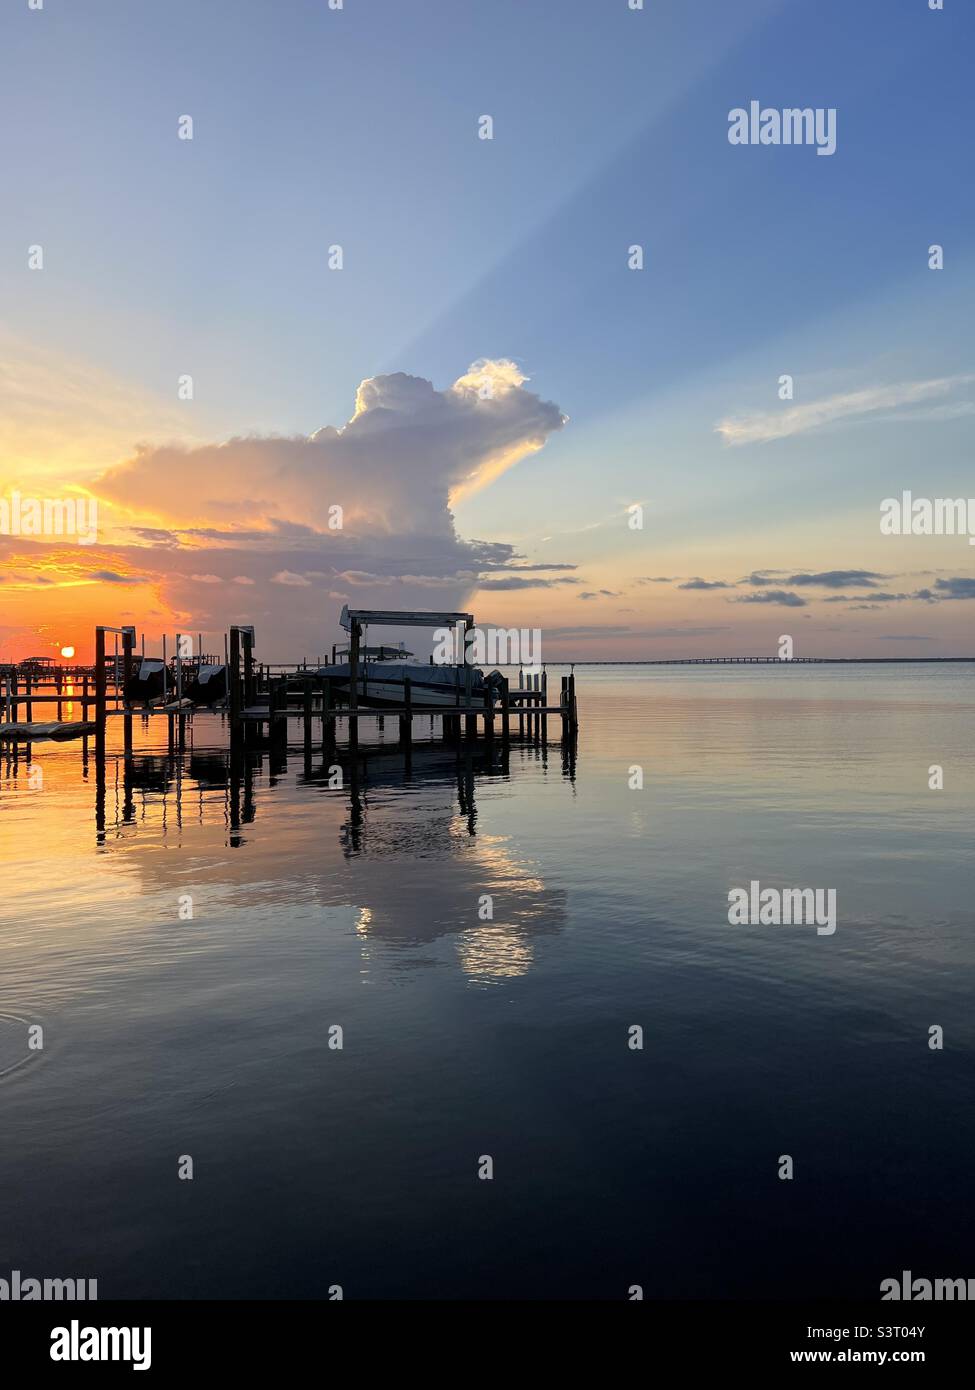 Espectacular cielo de puesta de sol con rayos de sol y reflejos sobre el agua de la bahía Foto de stock